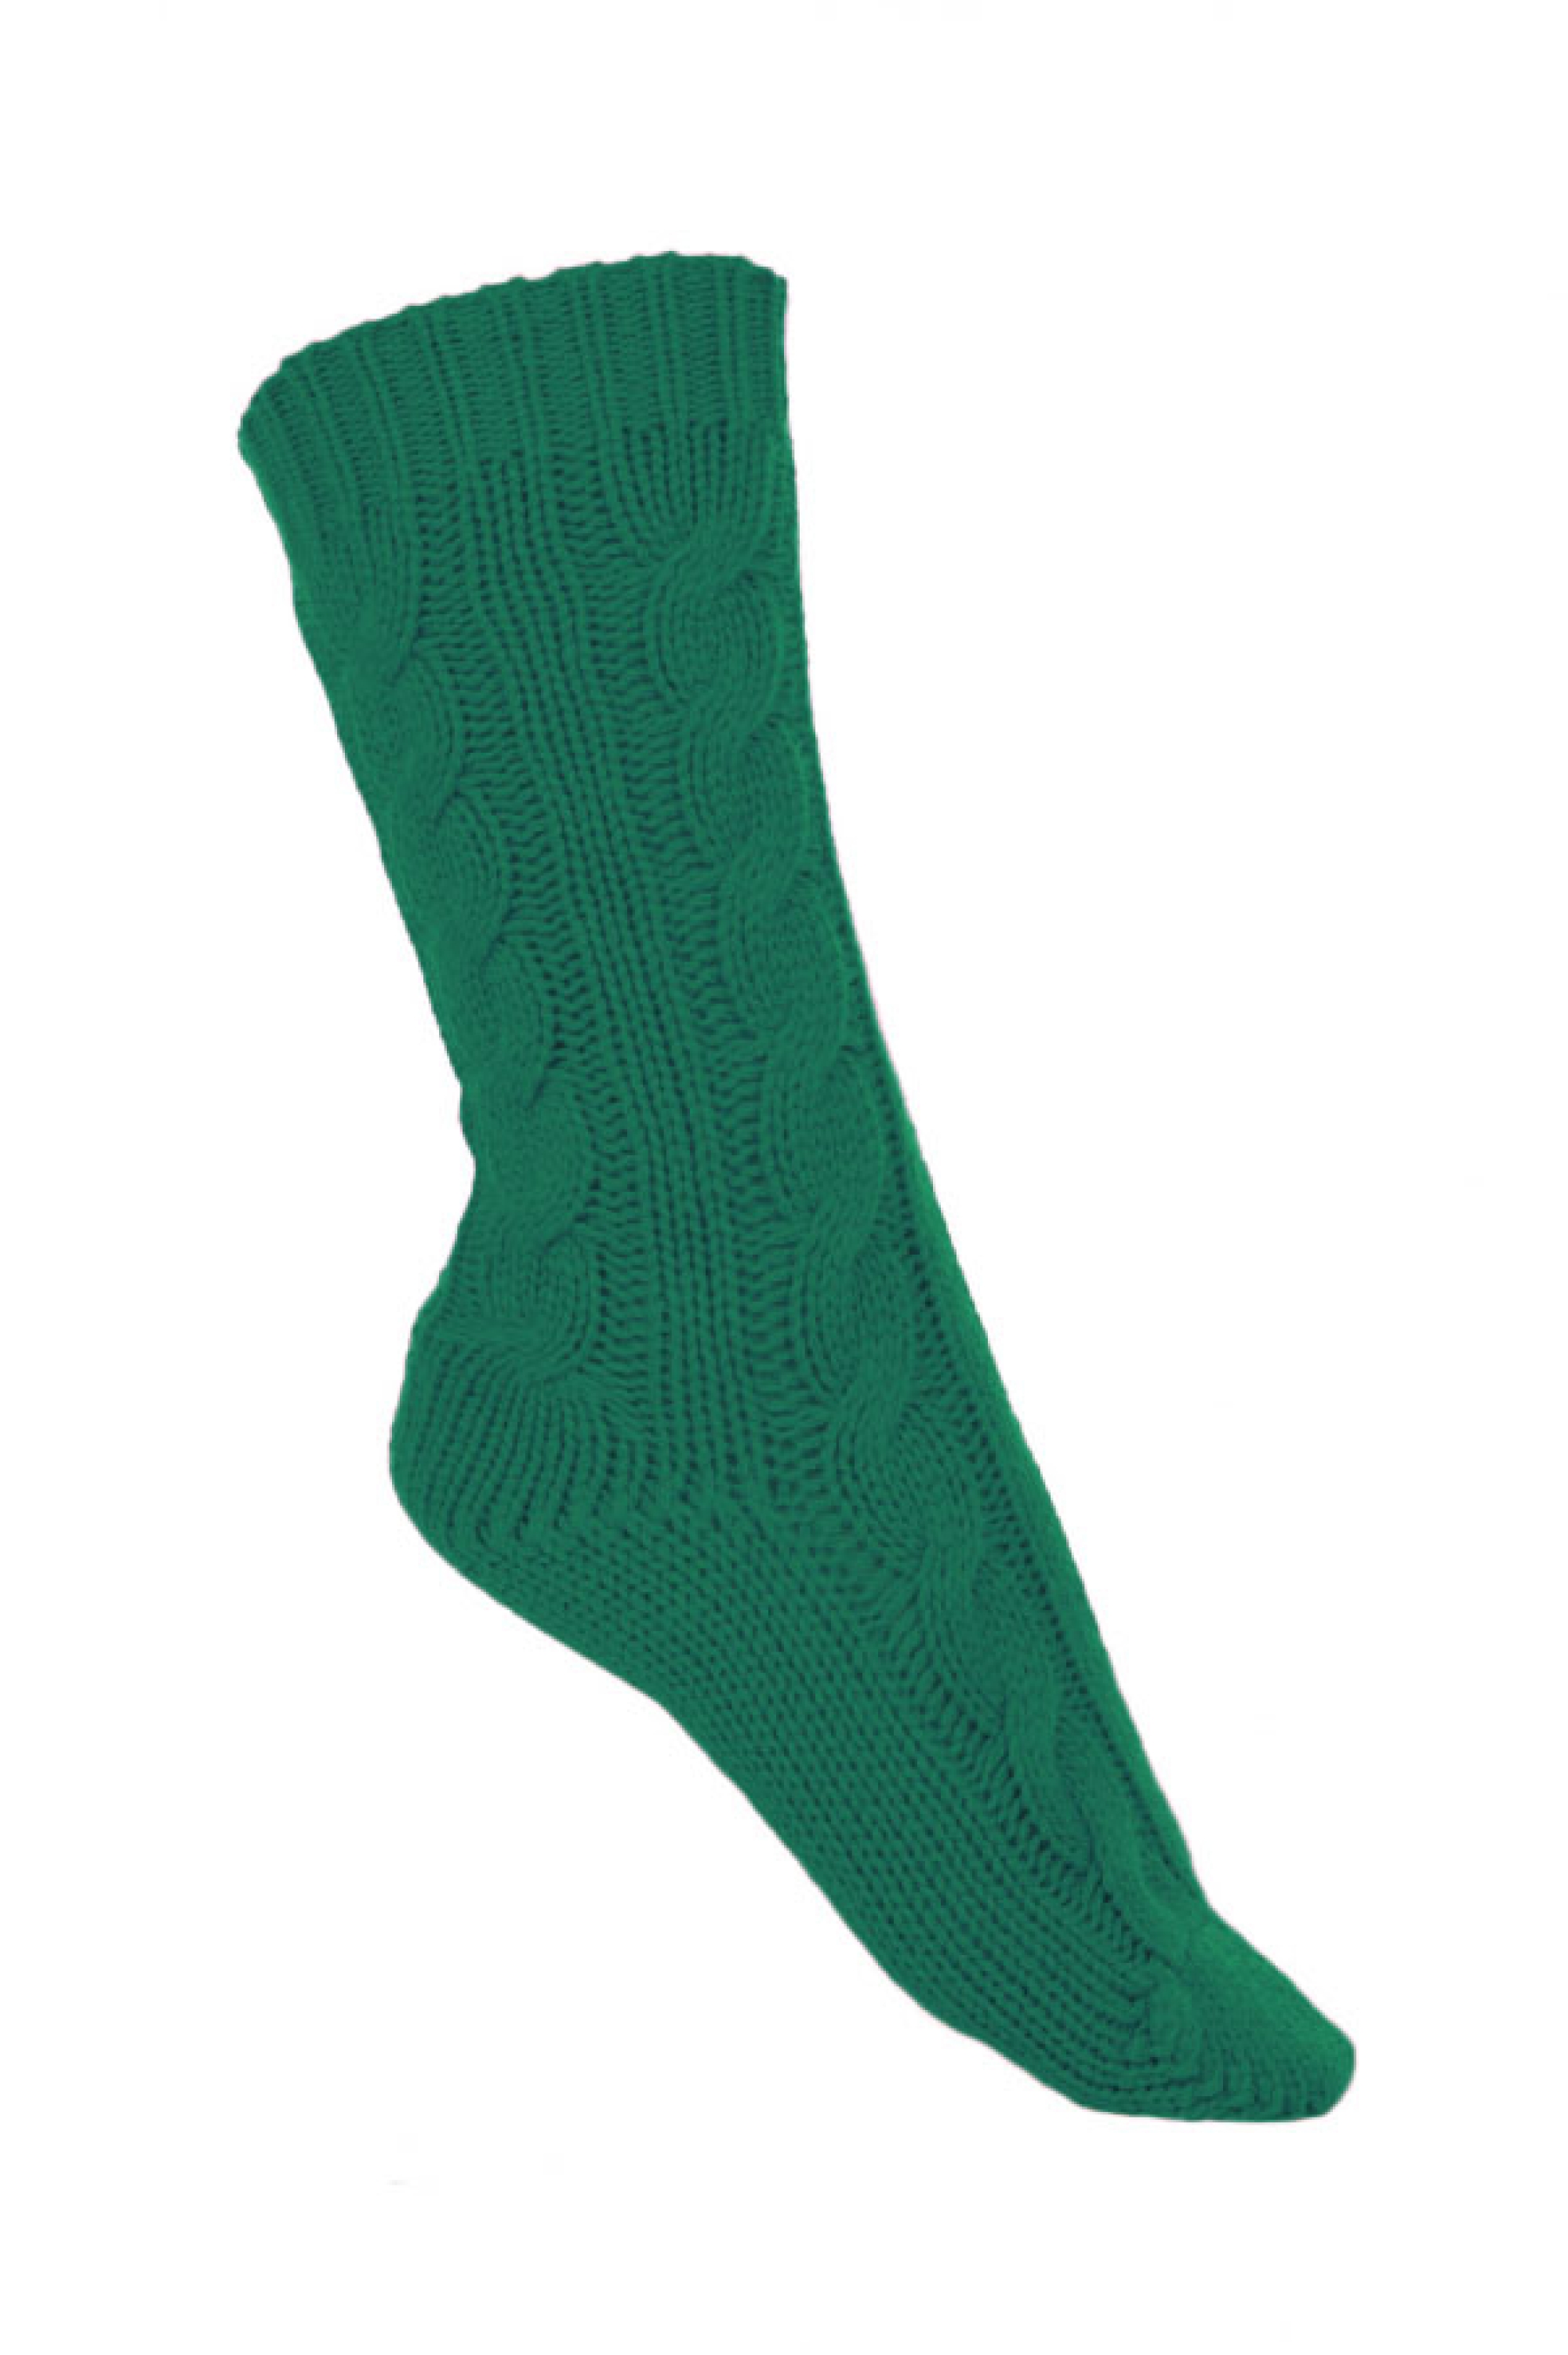 Cachemire accessoires chaussettes pedibus vert anglais 37 41